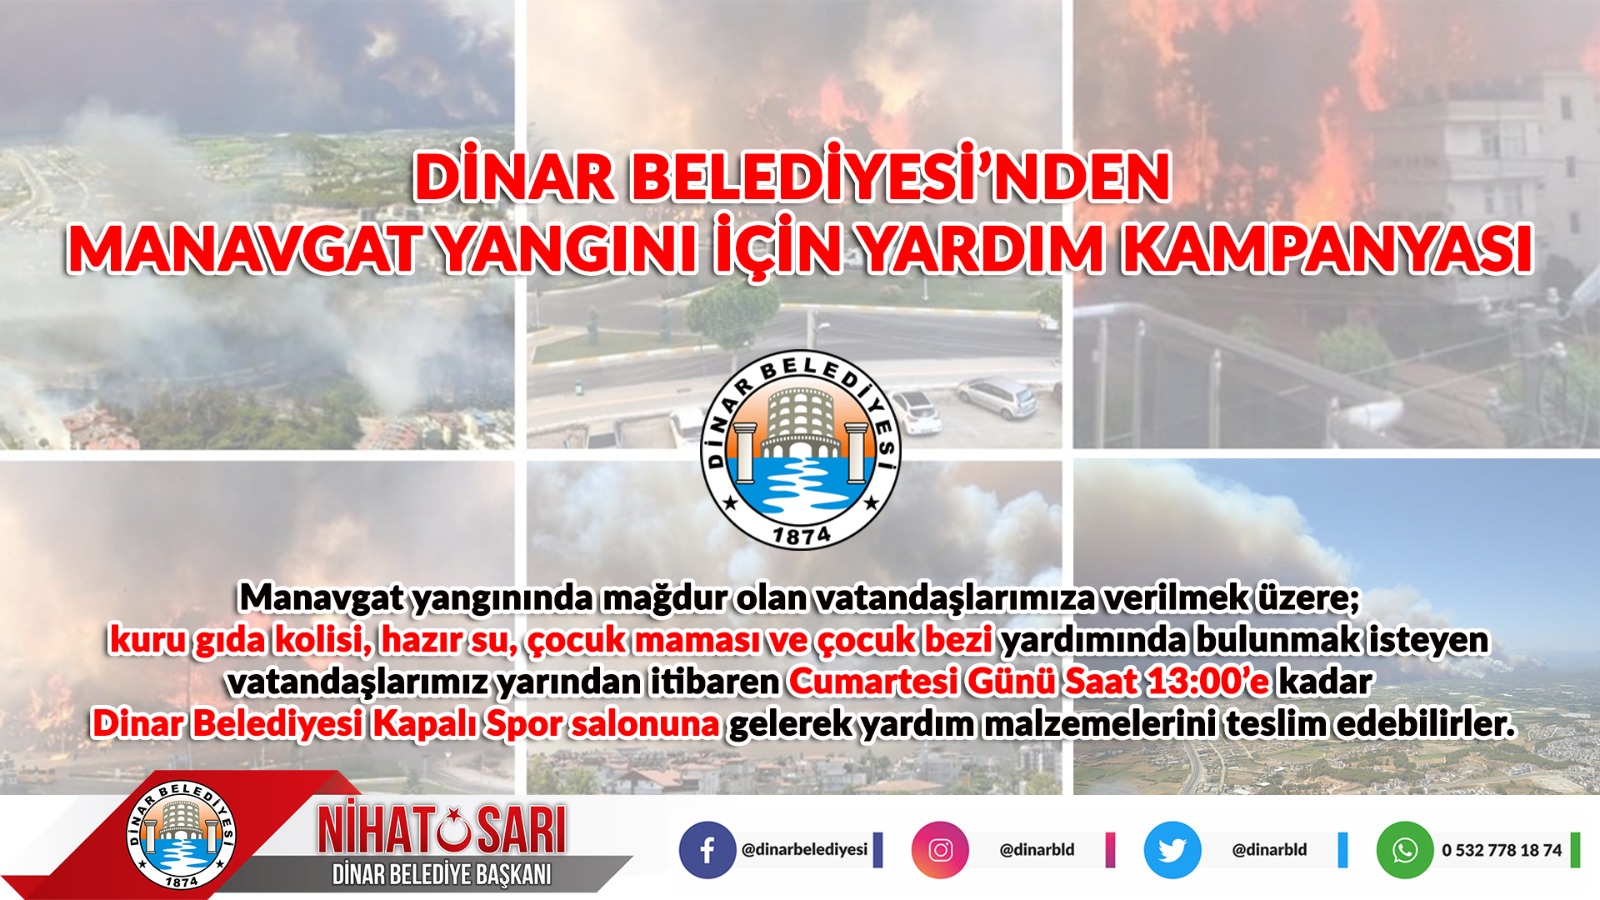  Dinar Belediyesinden, Manavgat Yangını İçin Yardım Kampanyası